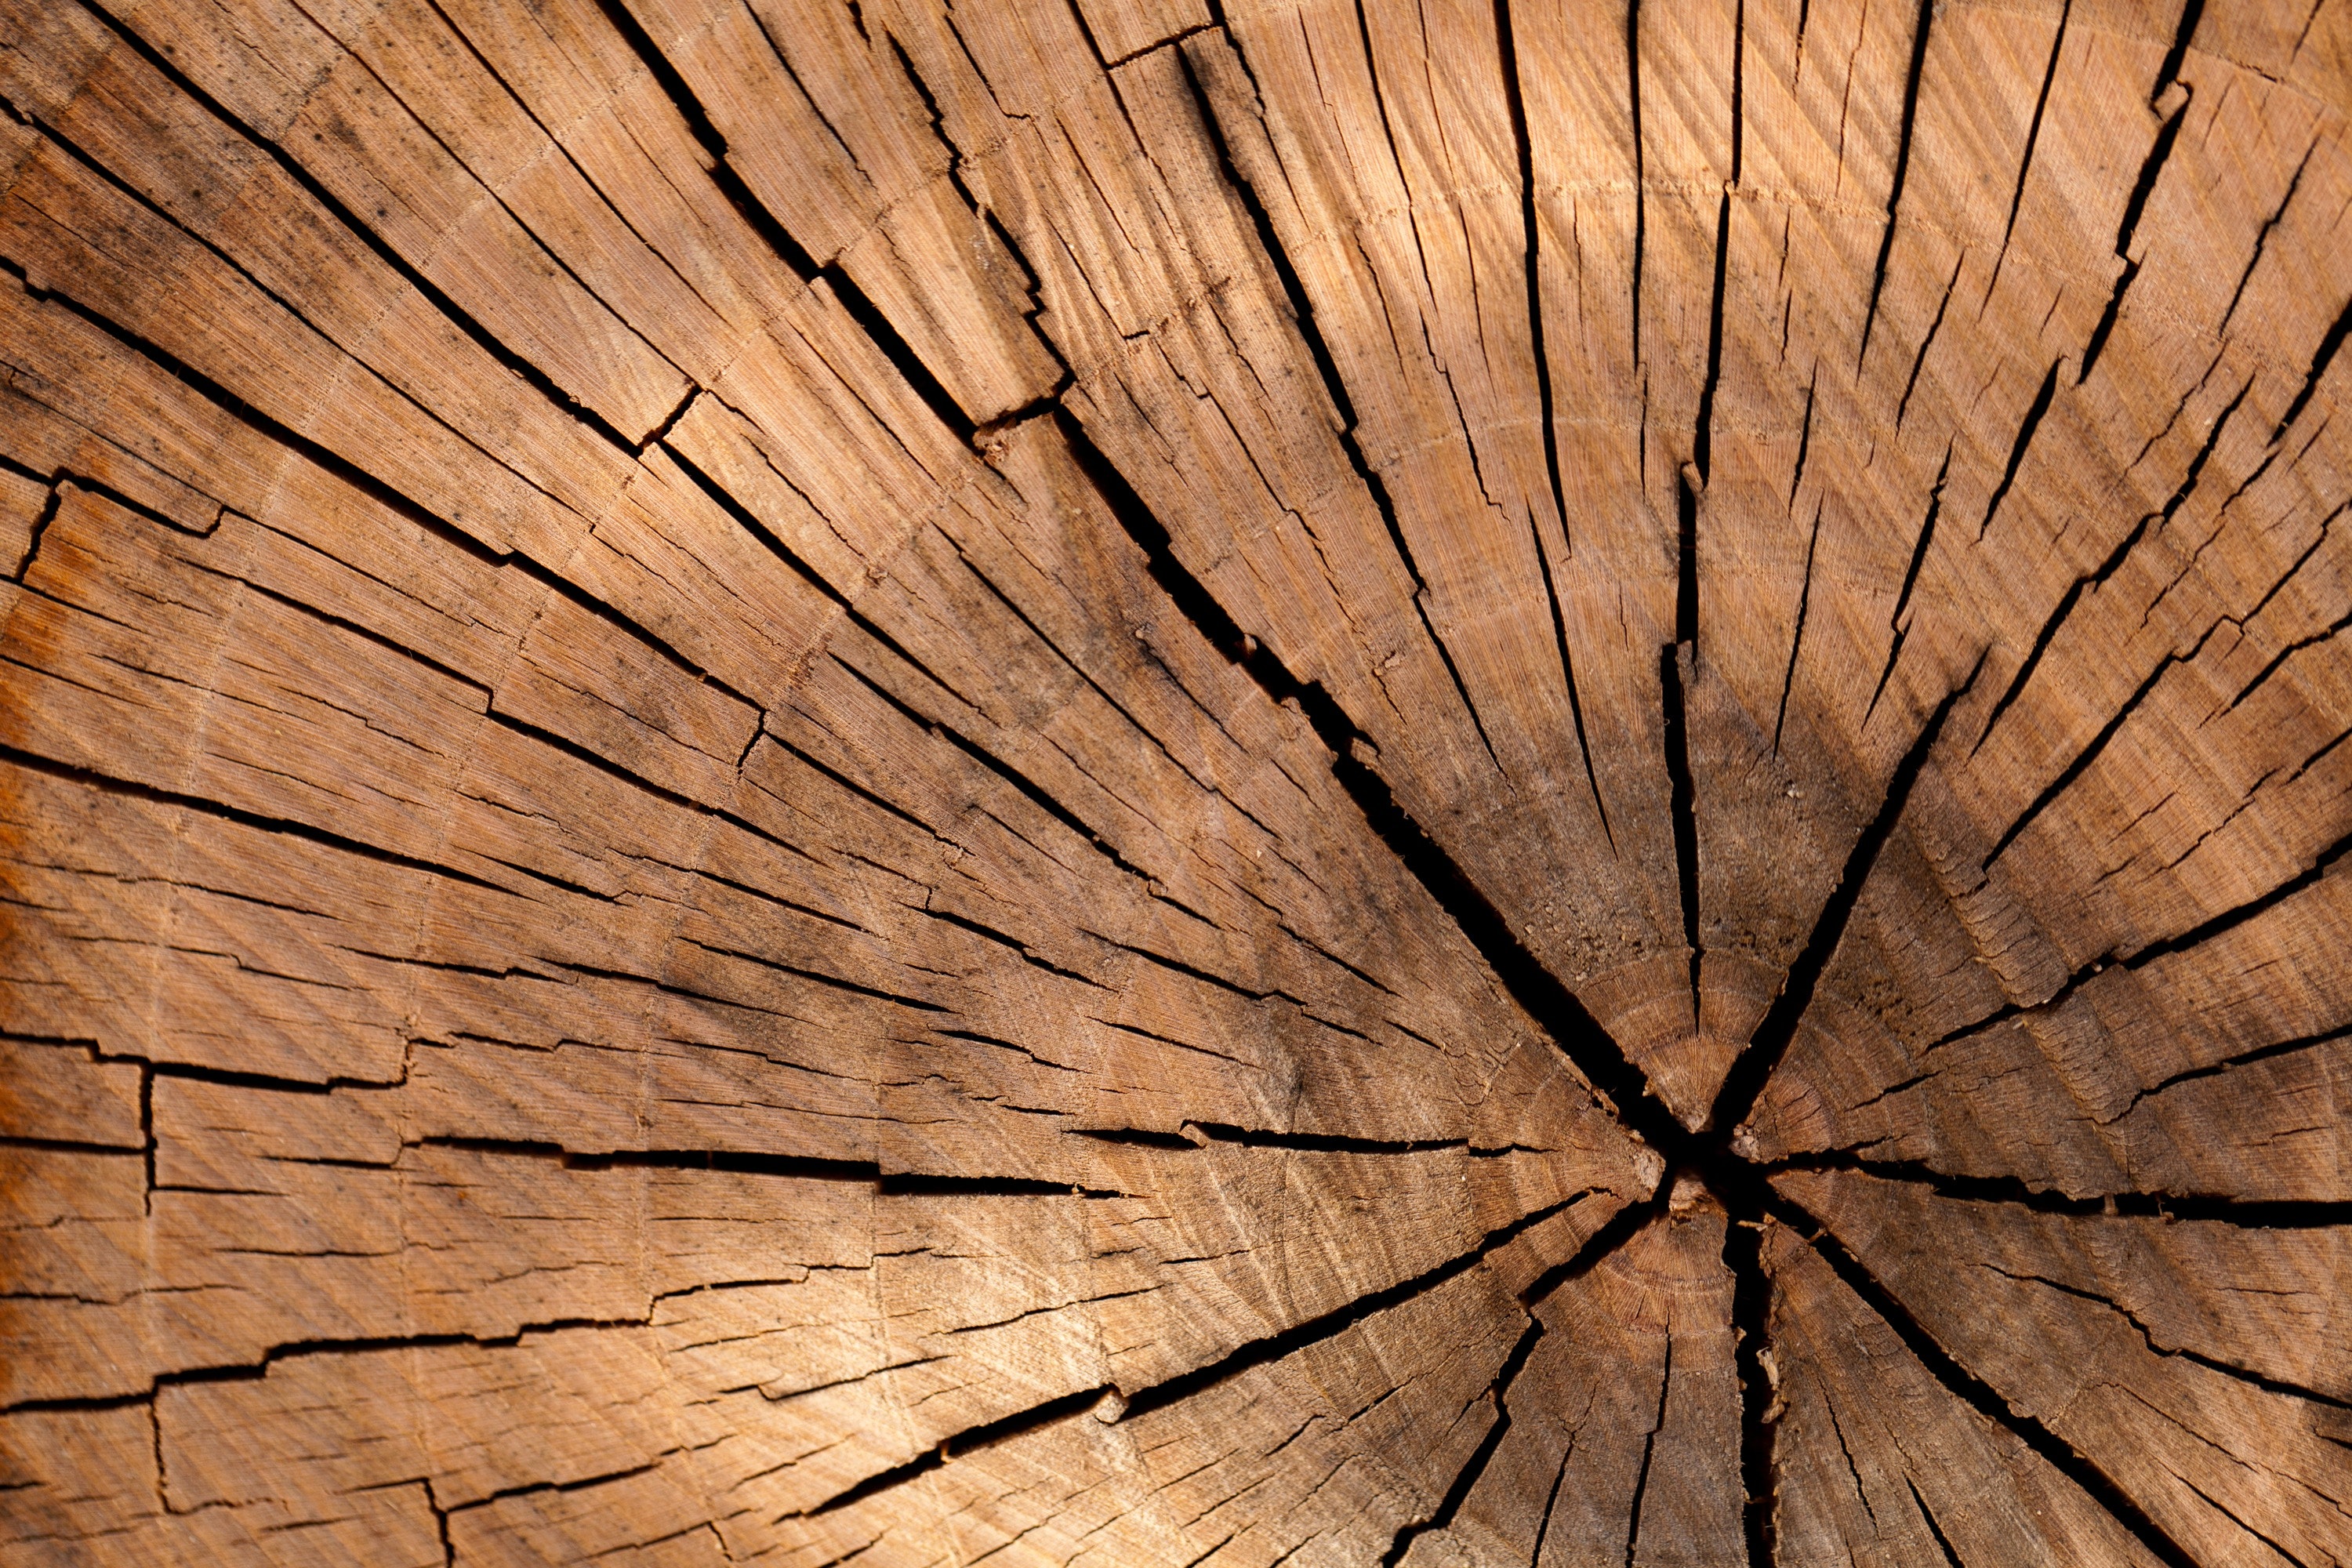 Vật liệu xây dựng gỗ: Gỗ là một vật liệu xây dựng rất thông dụng, đem lại tính thẩm mỹ và bền vững cho các công trình. Với sự đa dạng về loại cây và kiểu nội thất, gỗ có thể được sử dụng để tạo ra những sản phẩm độc đáo, tinh tế và tiết kiệm chi phí.